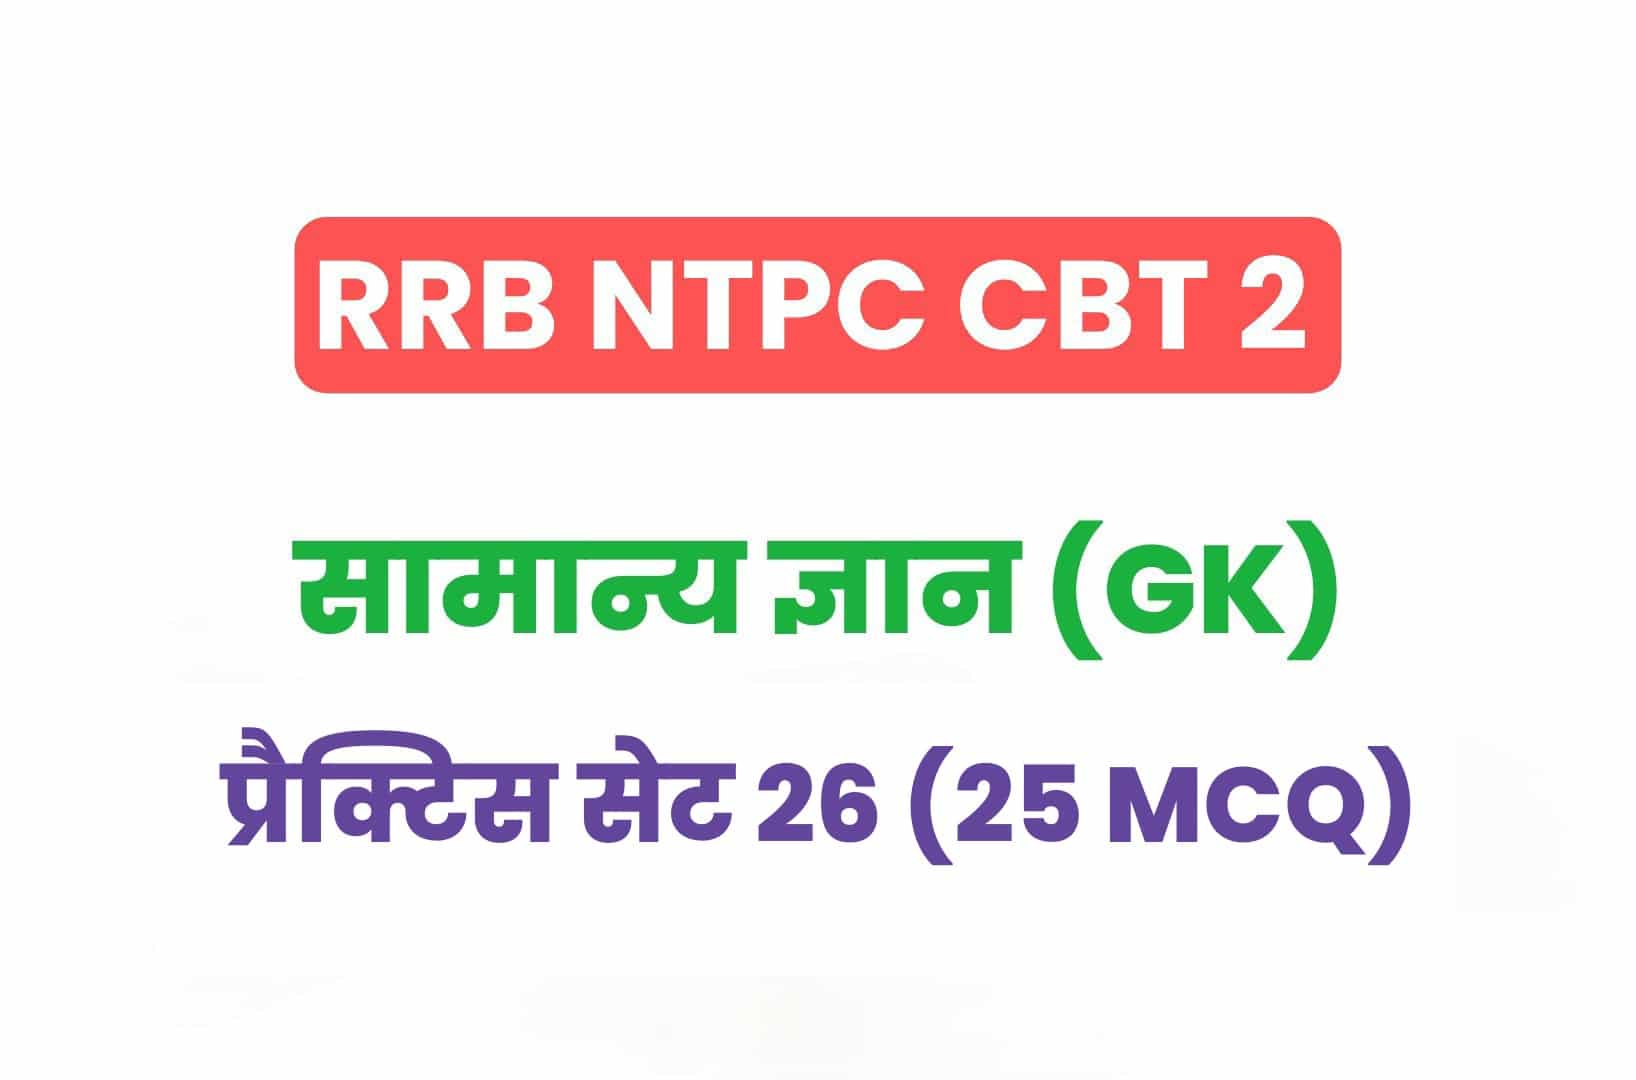 RRB NTPC CBT 2 GK प्रैक्टिस सेट 26: सामान्य ज्ञान के महत्वपूर्ण प्रश्नों का करें अध्ययन